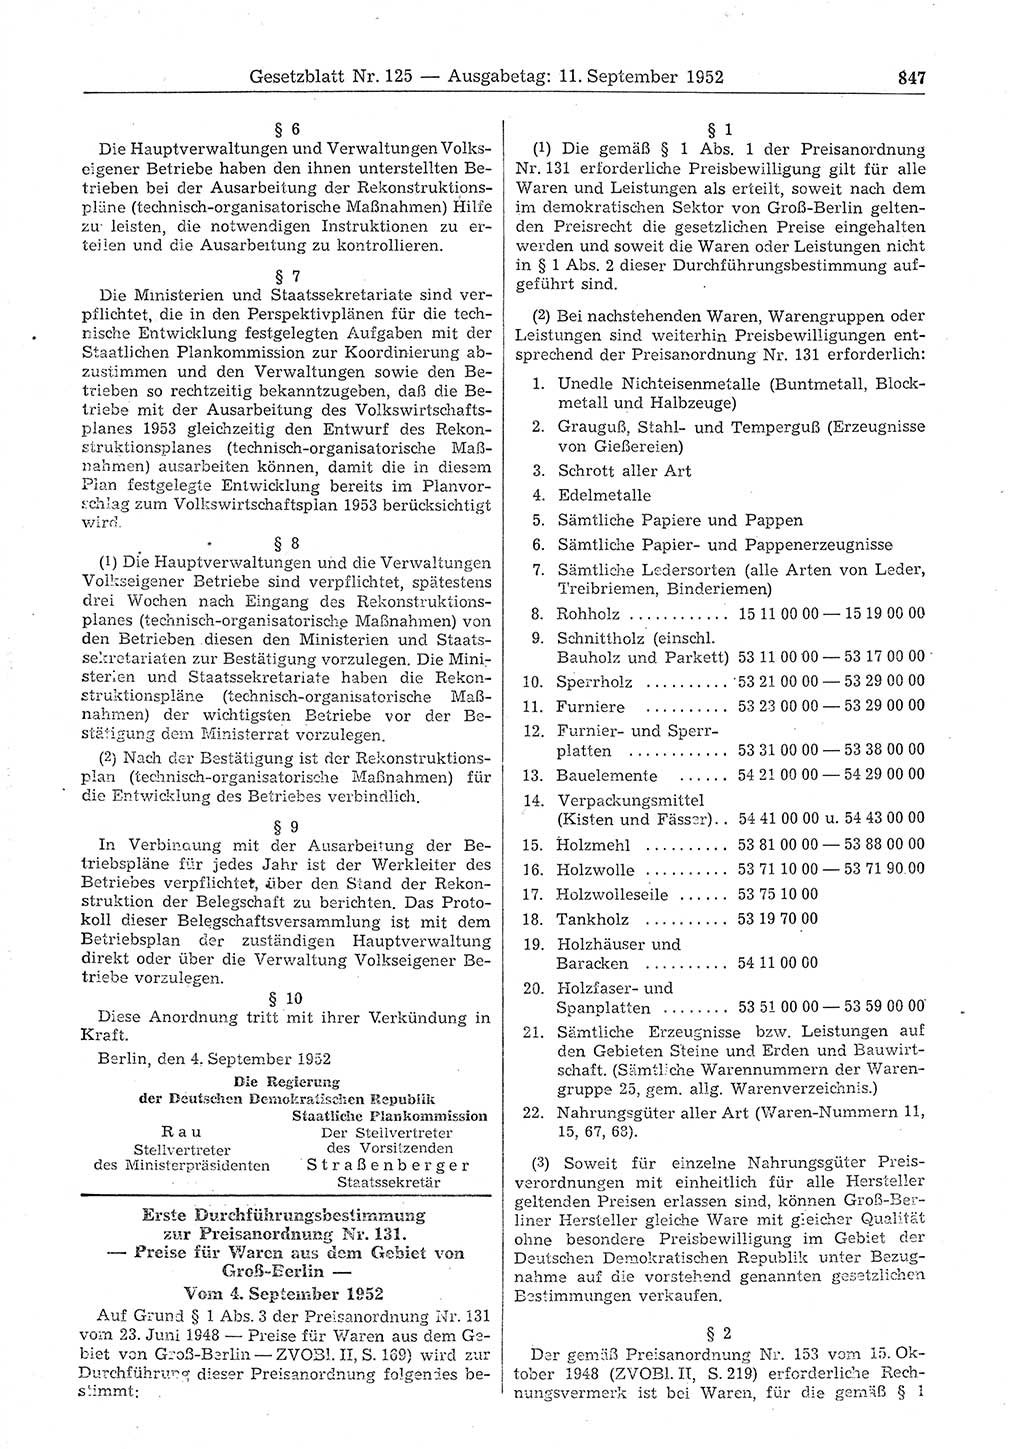 Gesetzblatt (GBl.) der Deutschen Demokratischen Republik (DDR) 1952, Seite 847 (GBl. DDR 1952, S. 847)